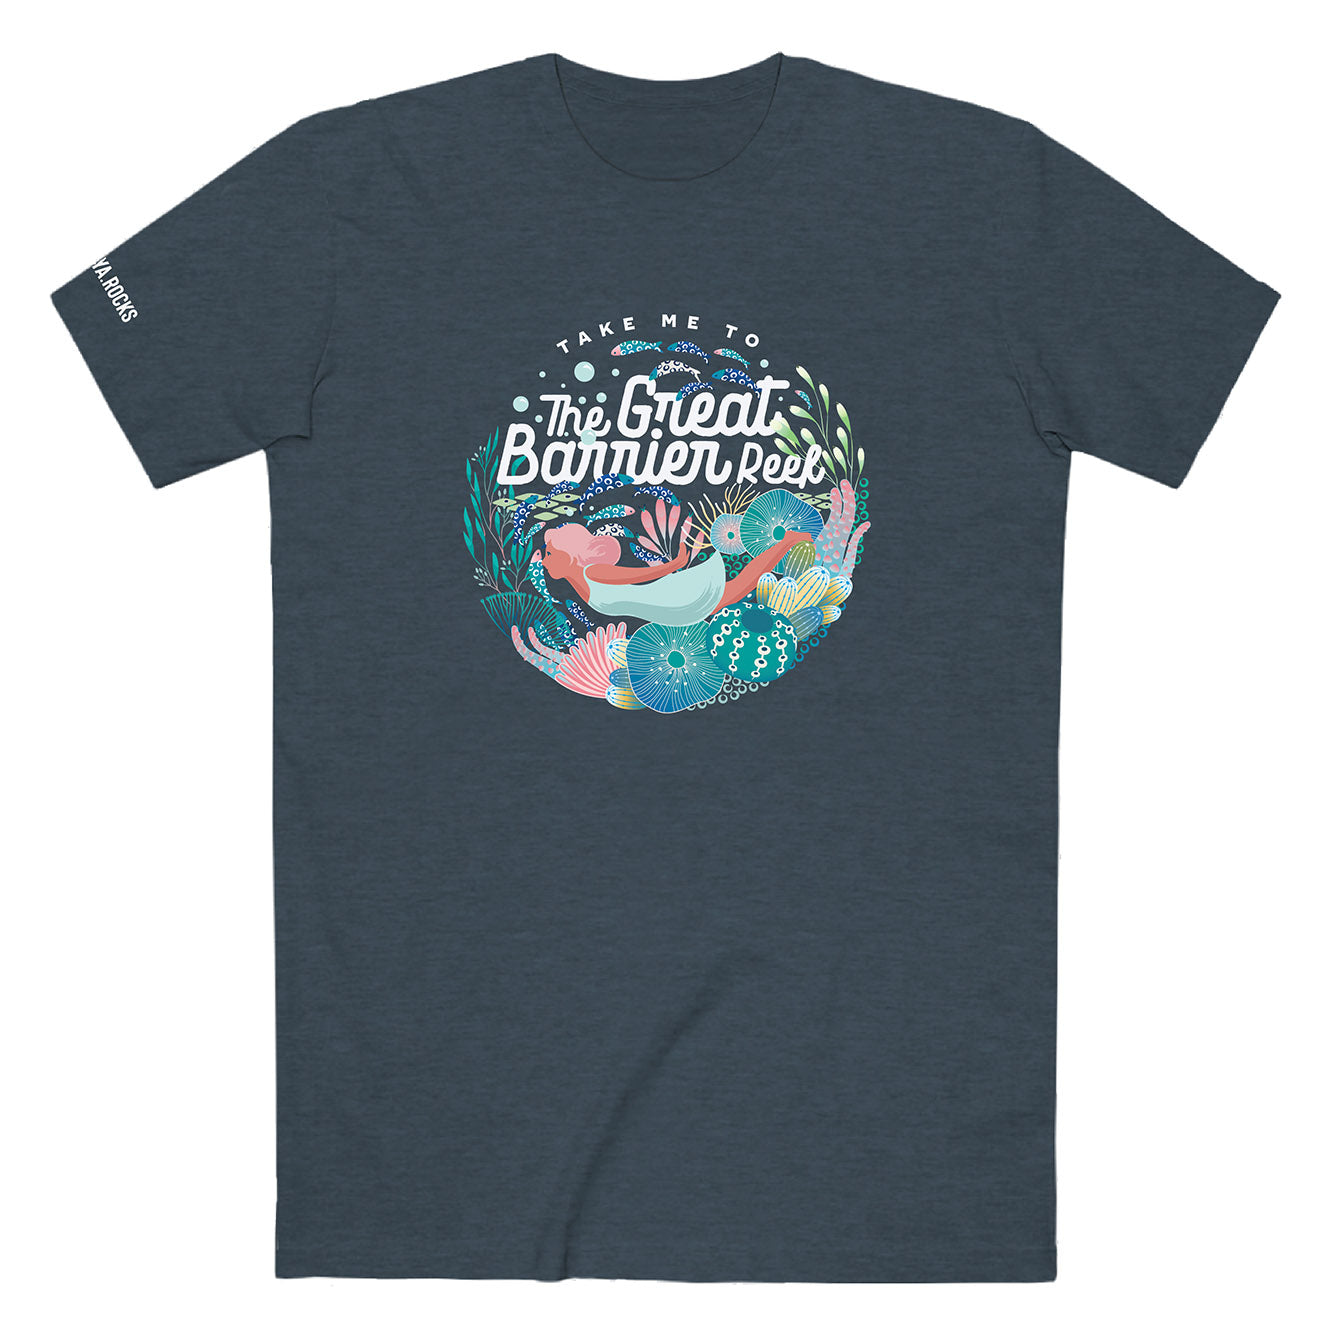 The Great Barrier Reef - Heavyweight Crewneck T-shirt